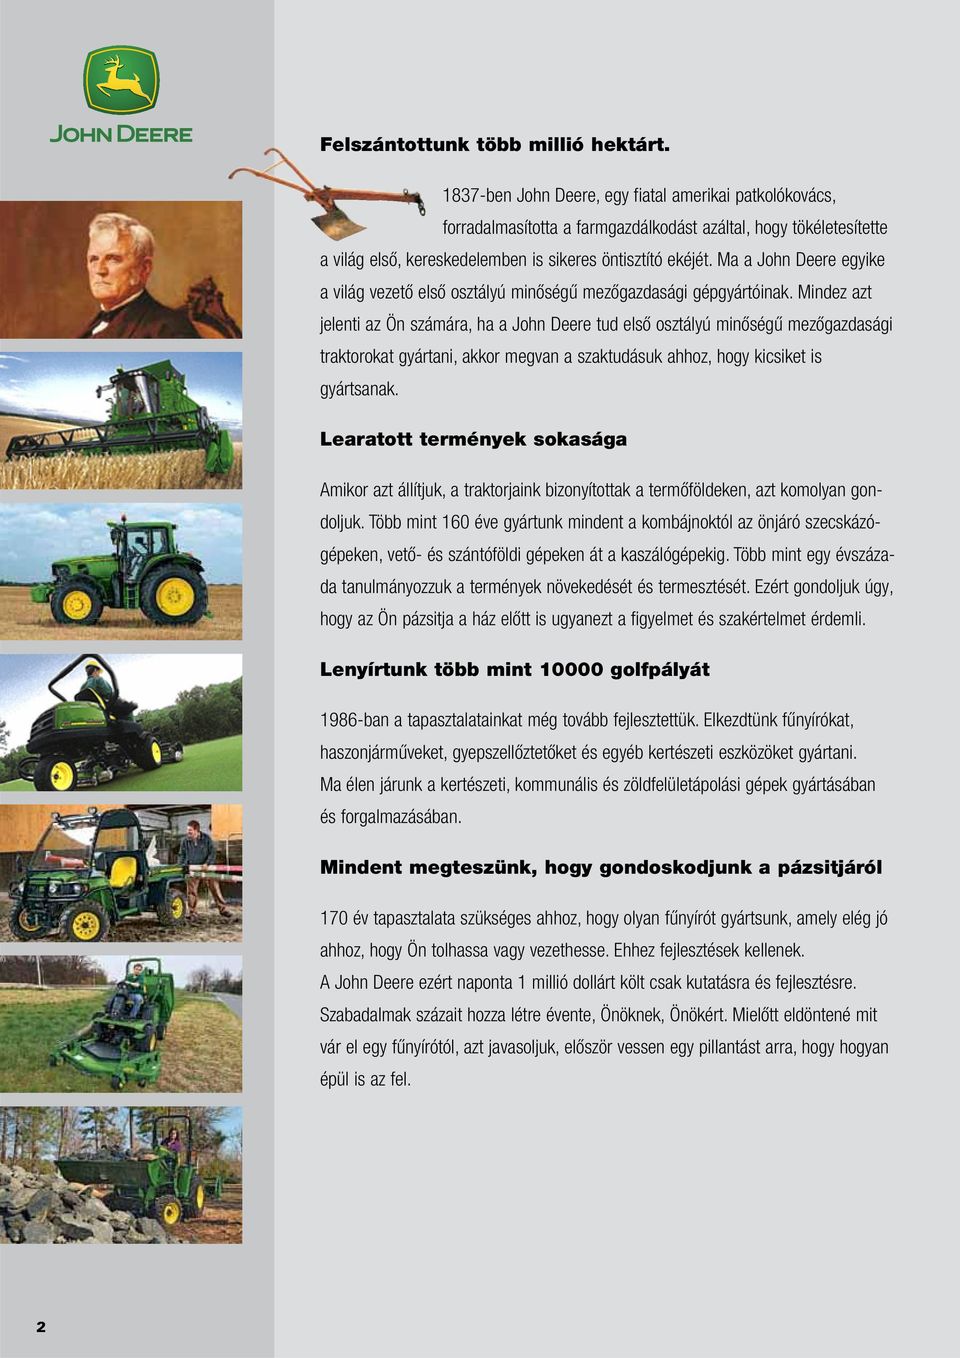 Ma a John Deere egyike a világ vezető első osztályú minőségű mezőgazdasági gépgyártóinak.